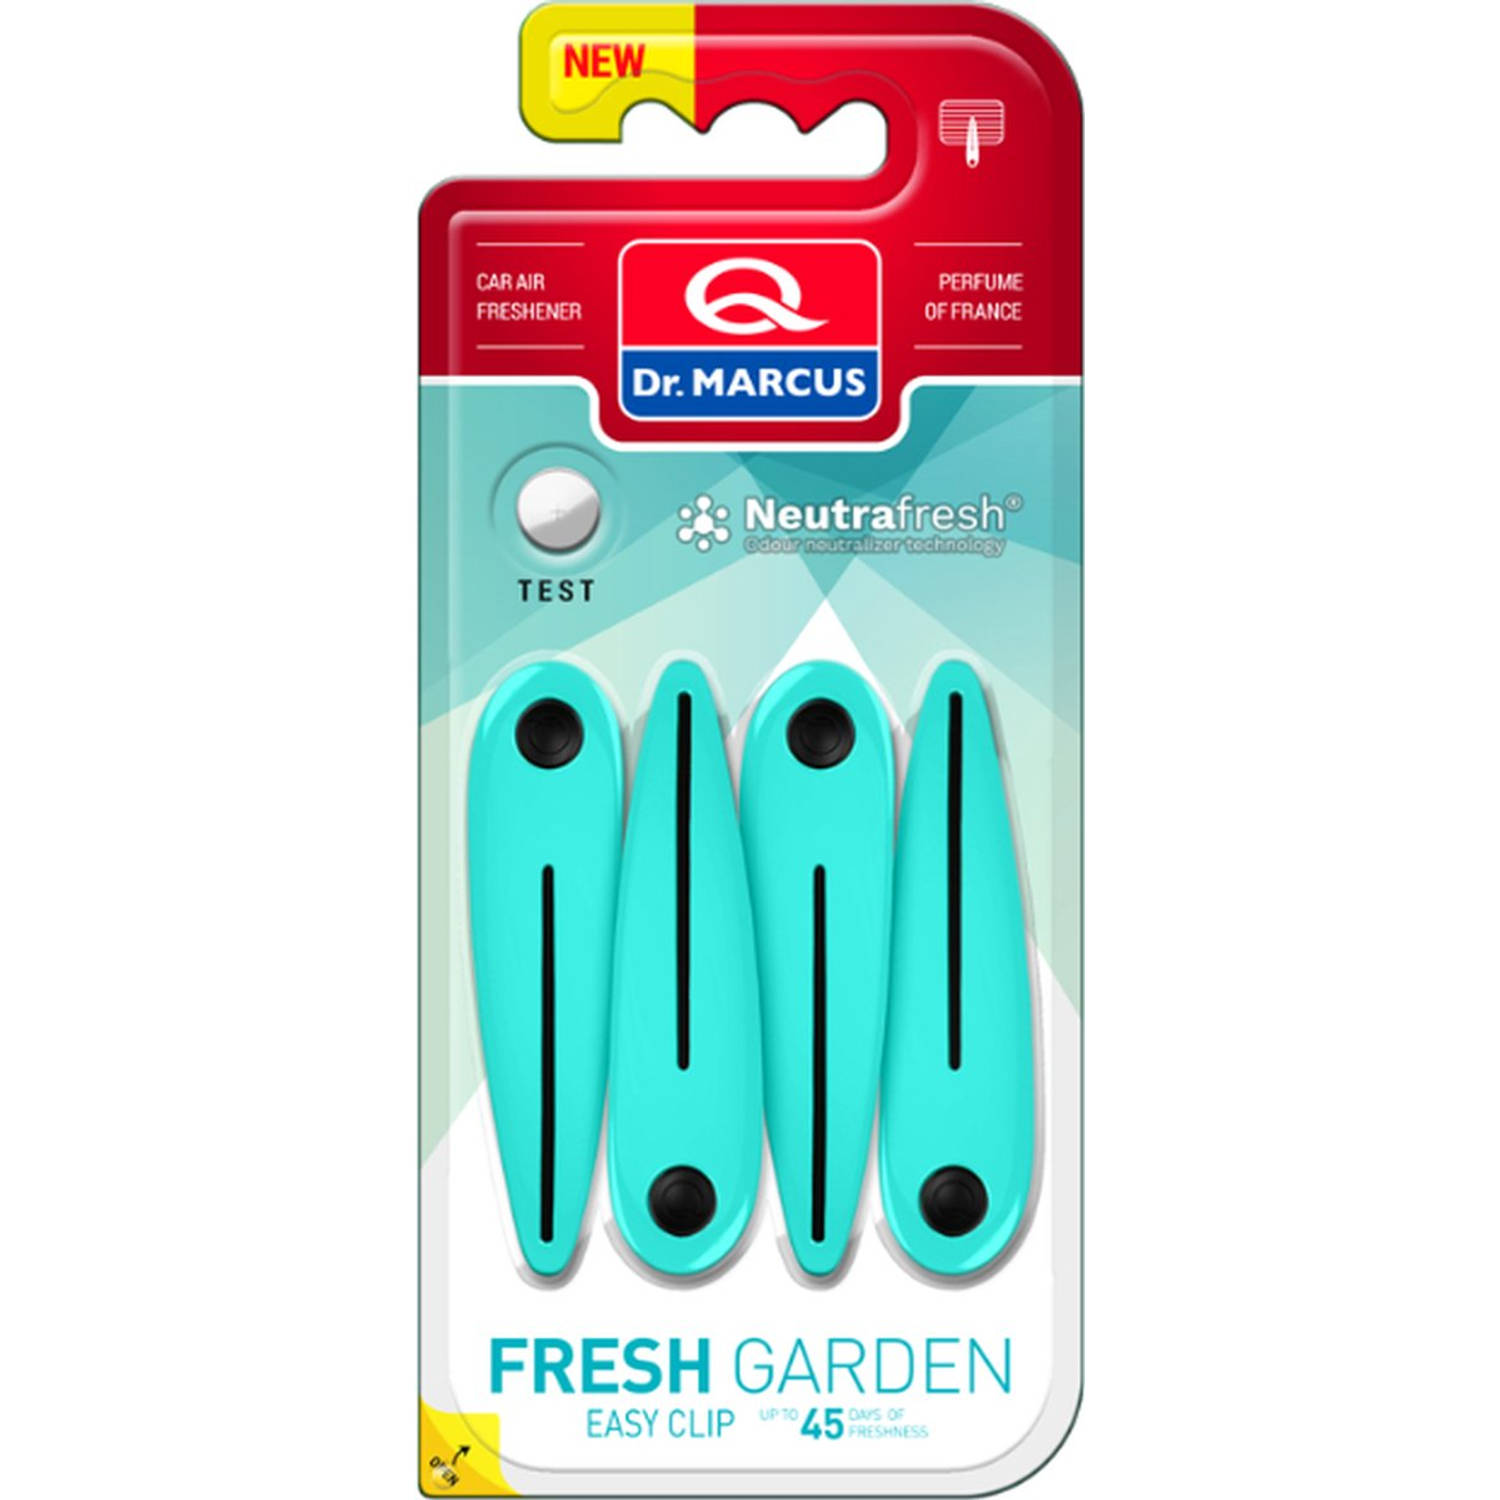 Dr. Marcus Easy Clip Fresh Garden luchtverfrisser met neutrafresh technologie 4 clips voor 4 sterkte